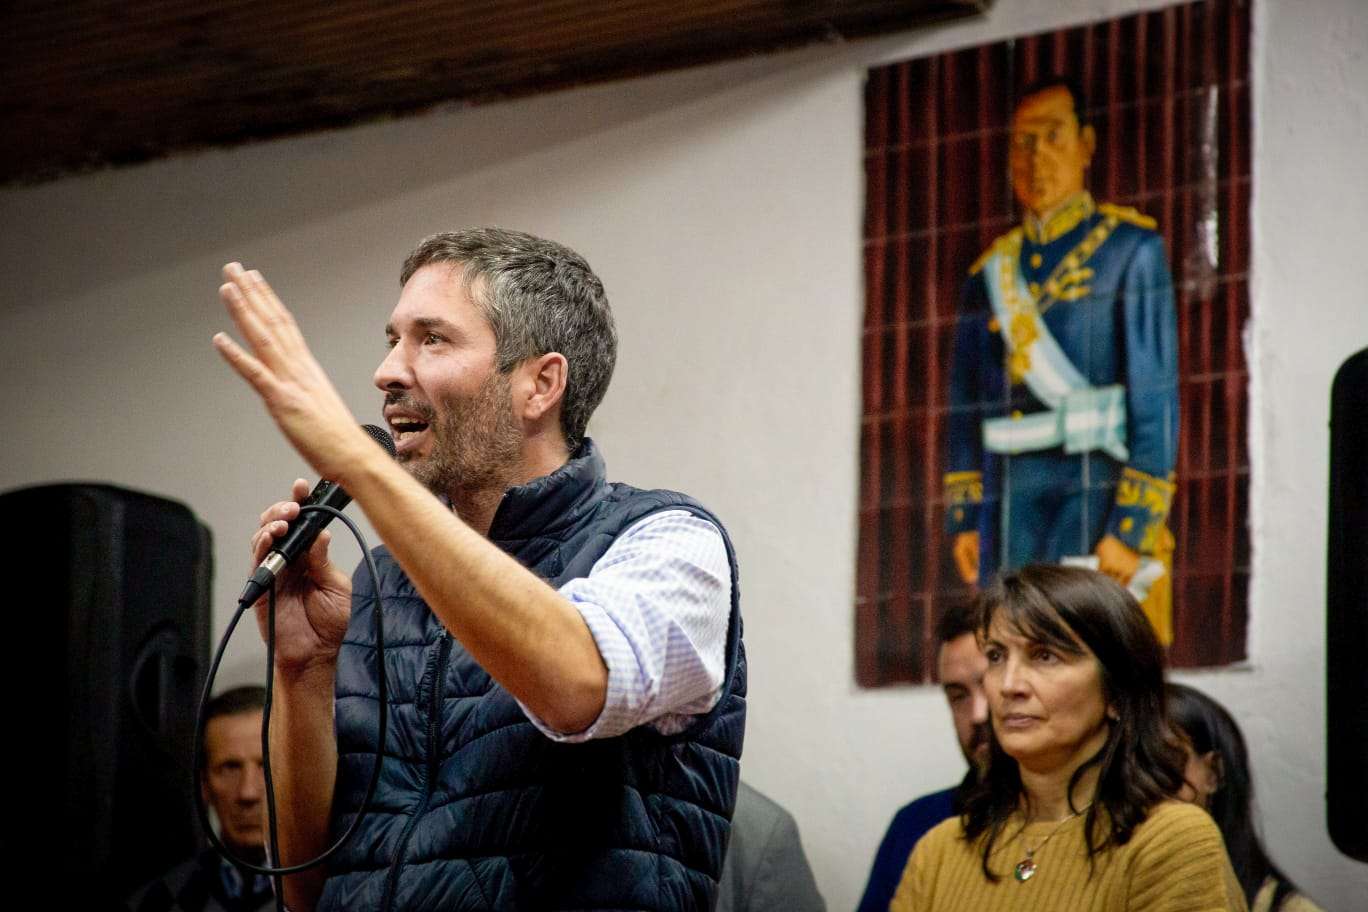 “Seremos una oposición constructiva en Gualeguay para ser una alternativa de gobierno” manifestó Muller